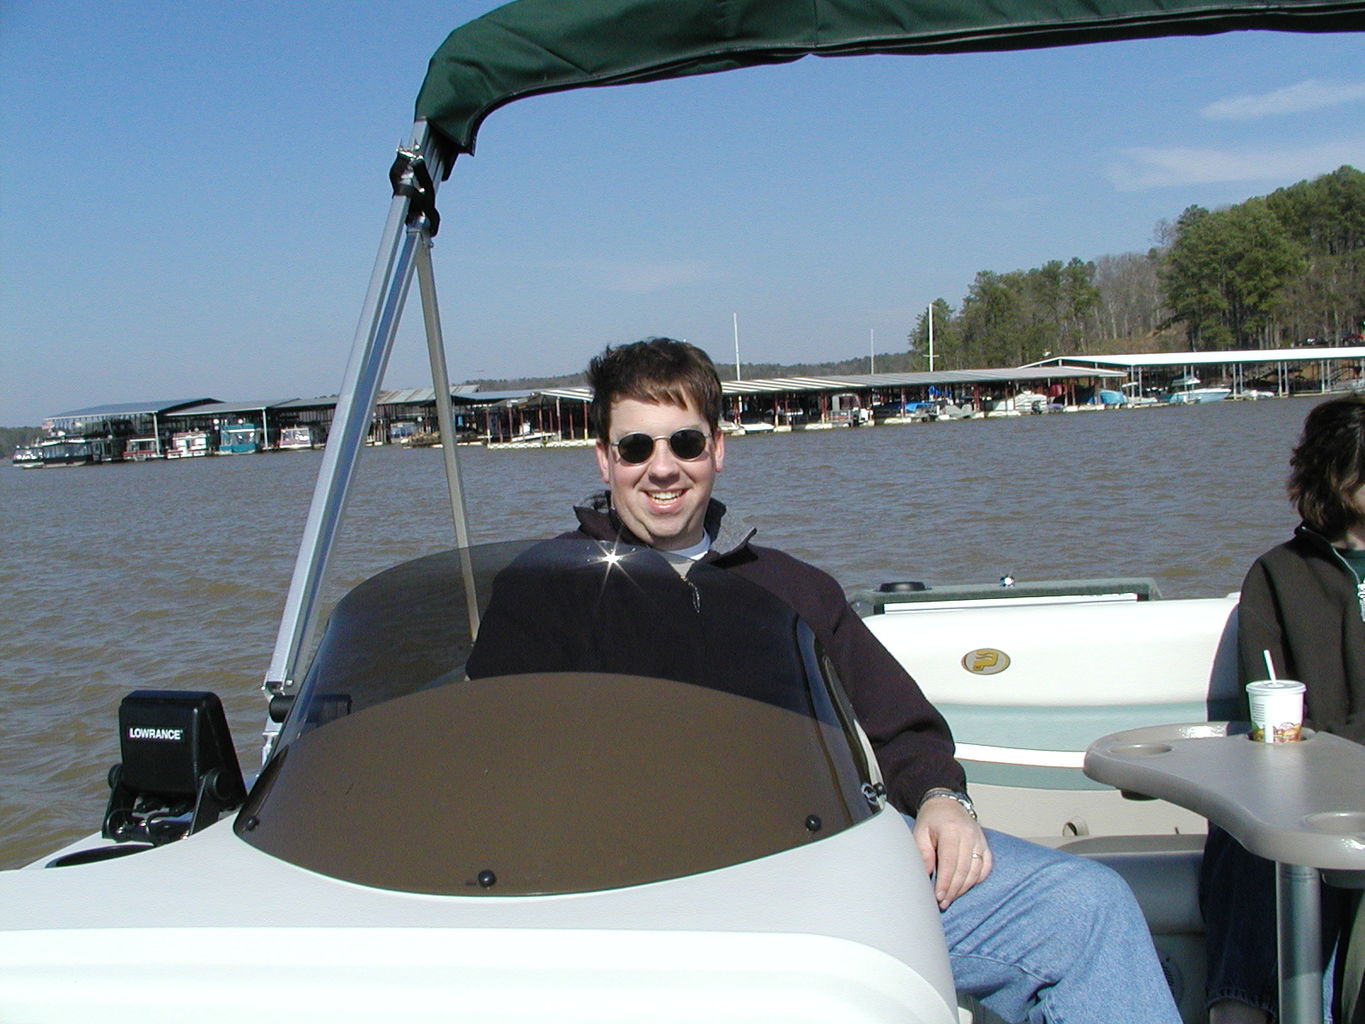 Ryan's New Boat
